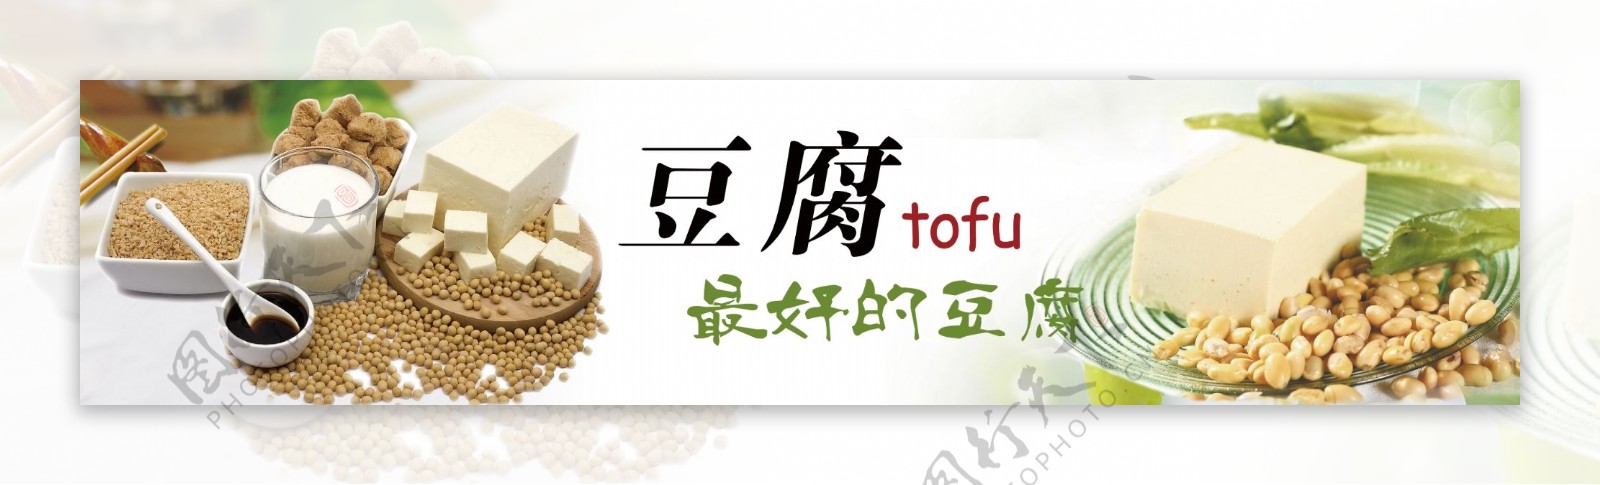 豆腐豆浆黄豆宣传海报